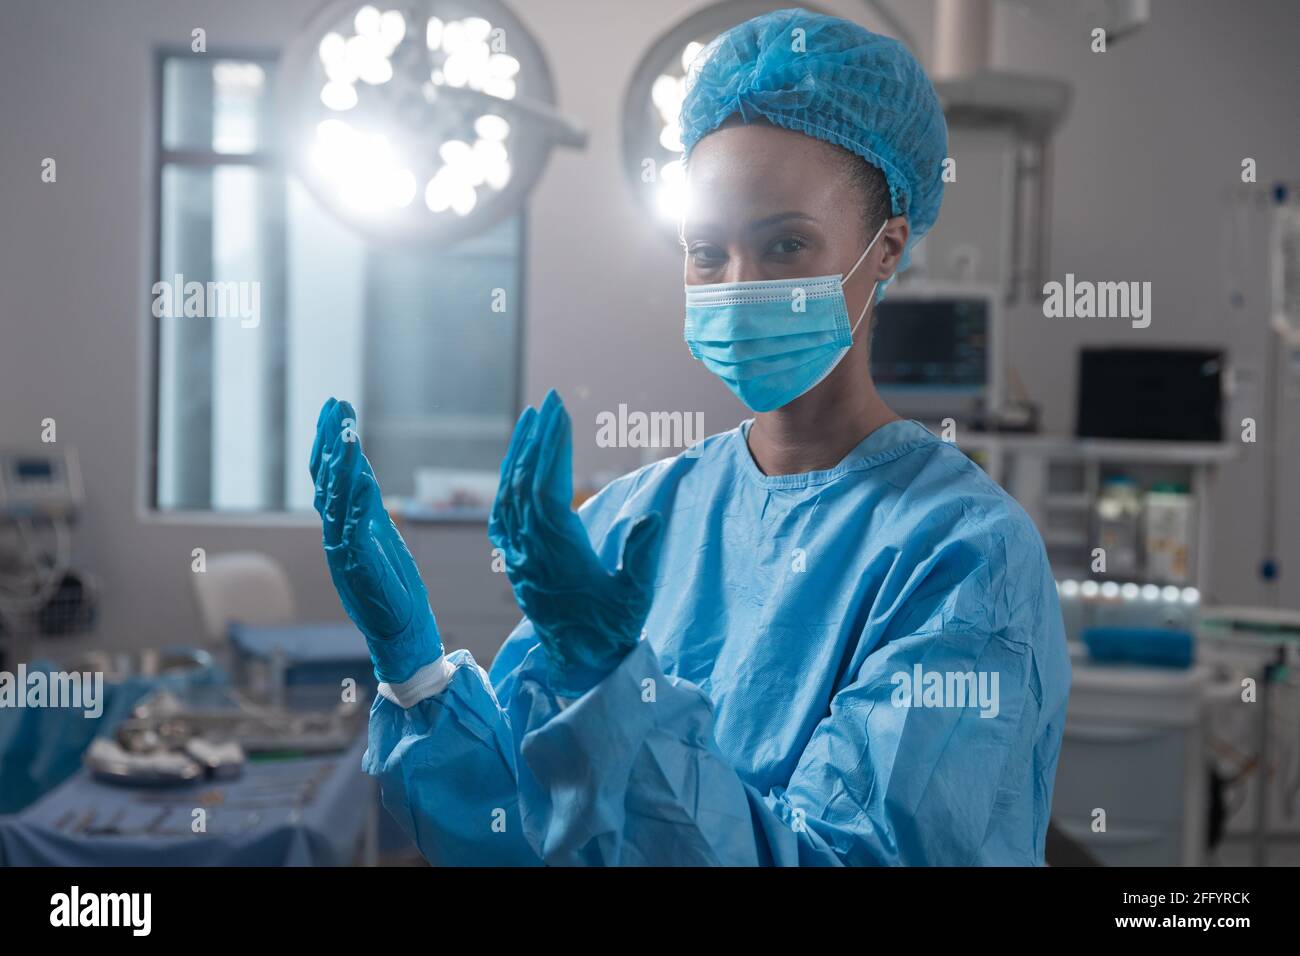 Femme chirurgien de race mixte portant un masque facial et des vêtements de protection en salle d'opération Banque D'Images